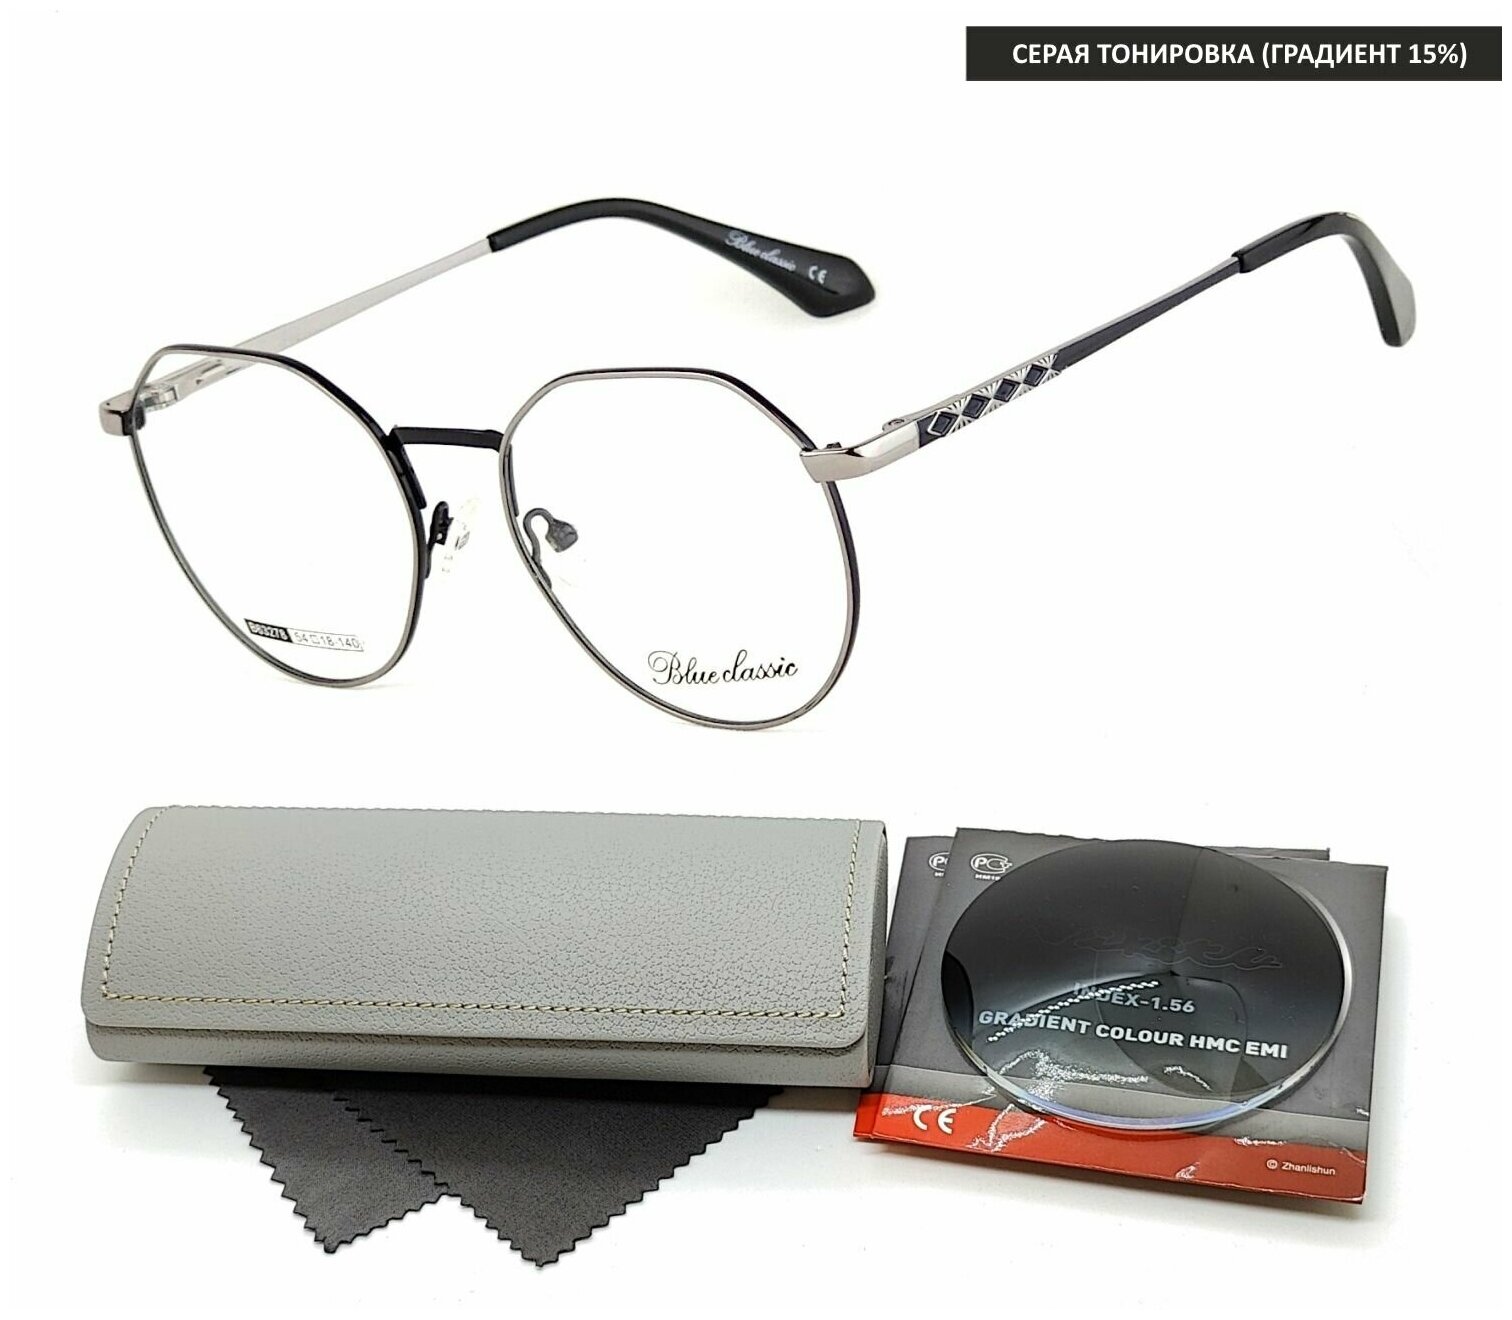 Тонированные очки с футляром на магните BLUE CLASSIC мод. 63278 Цвет 1 с линзами NIKITA 1.56 GRADIENT GRAY, HMA/EMI -2.00 РЦ 62-64